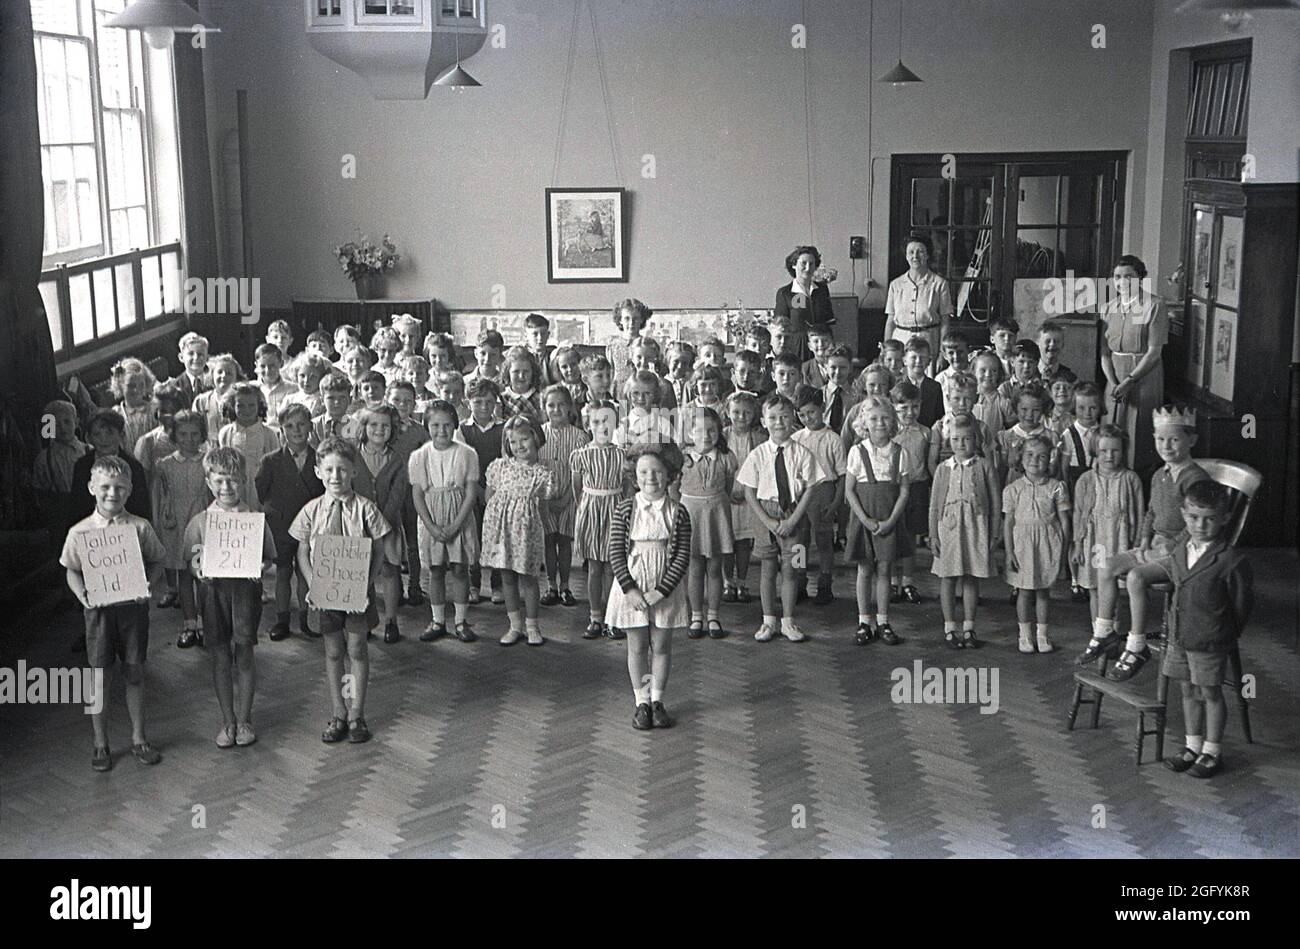 1955, historische Schulversammlung an einer Grundschule, Schüler, die für ein Gruppenbild stehen, mit drei jungen Jungen an der Vorderseite der Gruppe, die Karten hochhalten und sagen: „Tailor Coat 1d“ und Hatter hat 2d“ und „Cobble Shoes 3d“, England, Großbritannien. Stockfoto